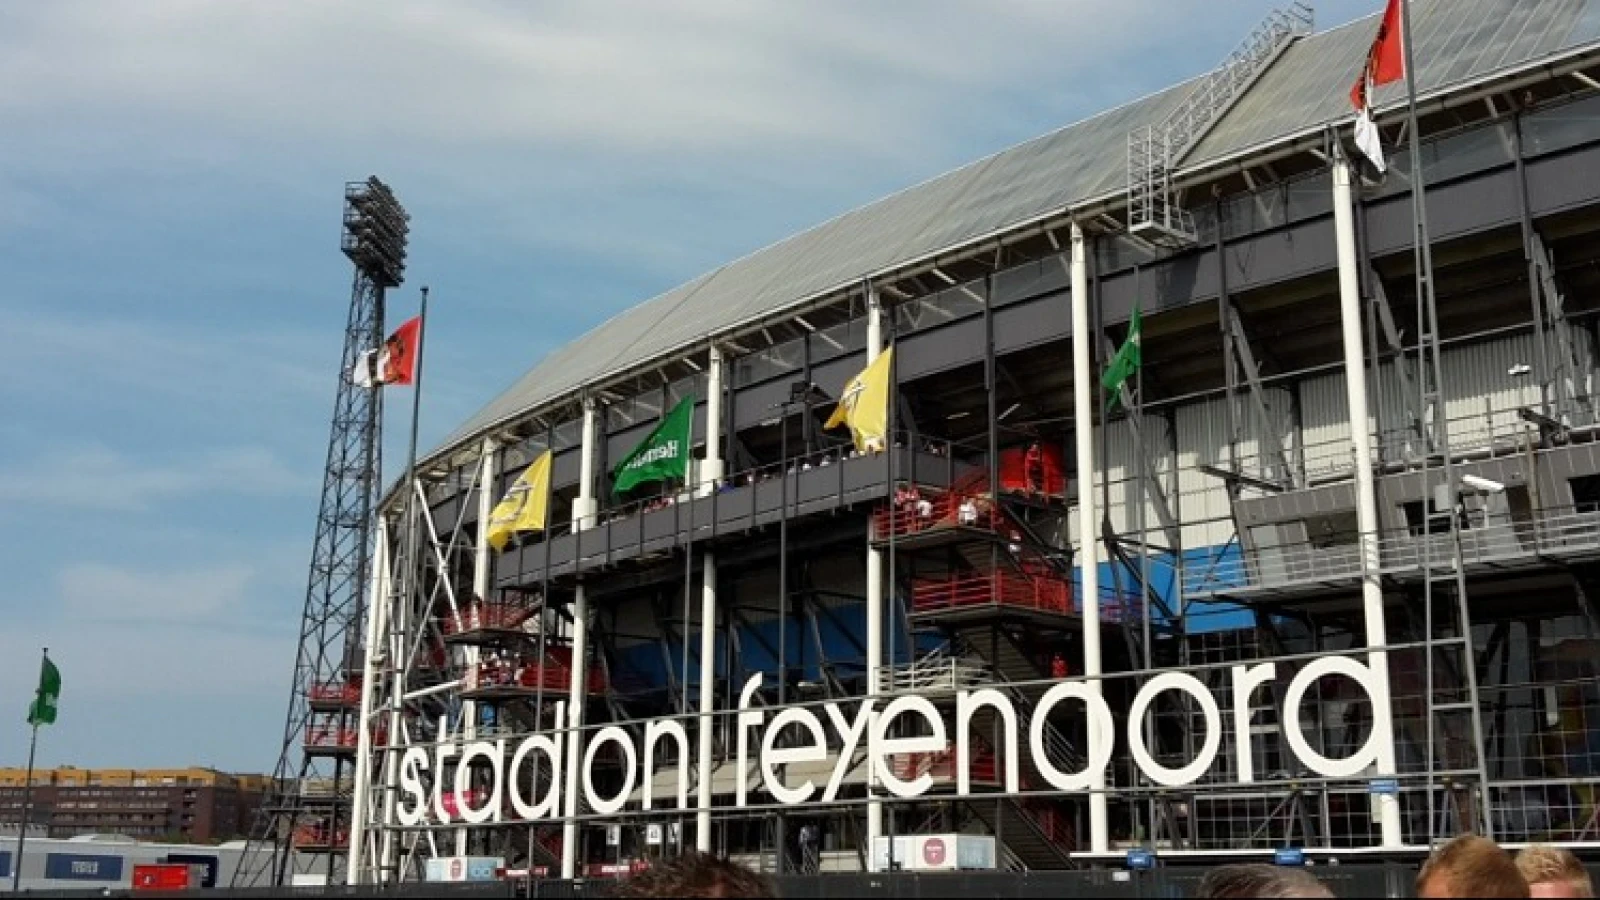 VIDEO | Feyenoord-oma viert 105e verjaardag in De Kuip